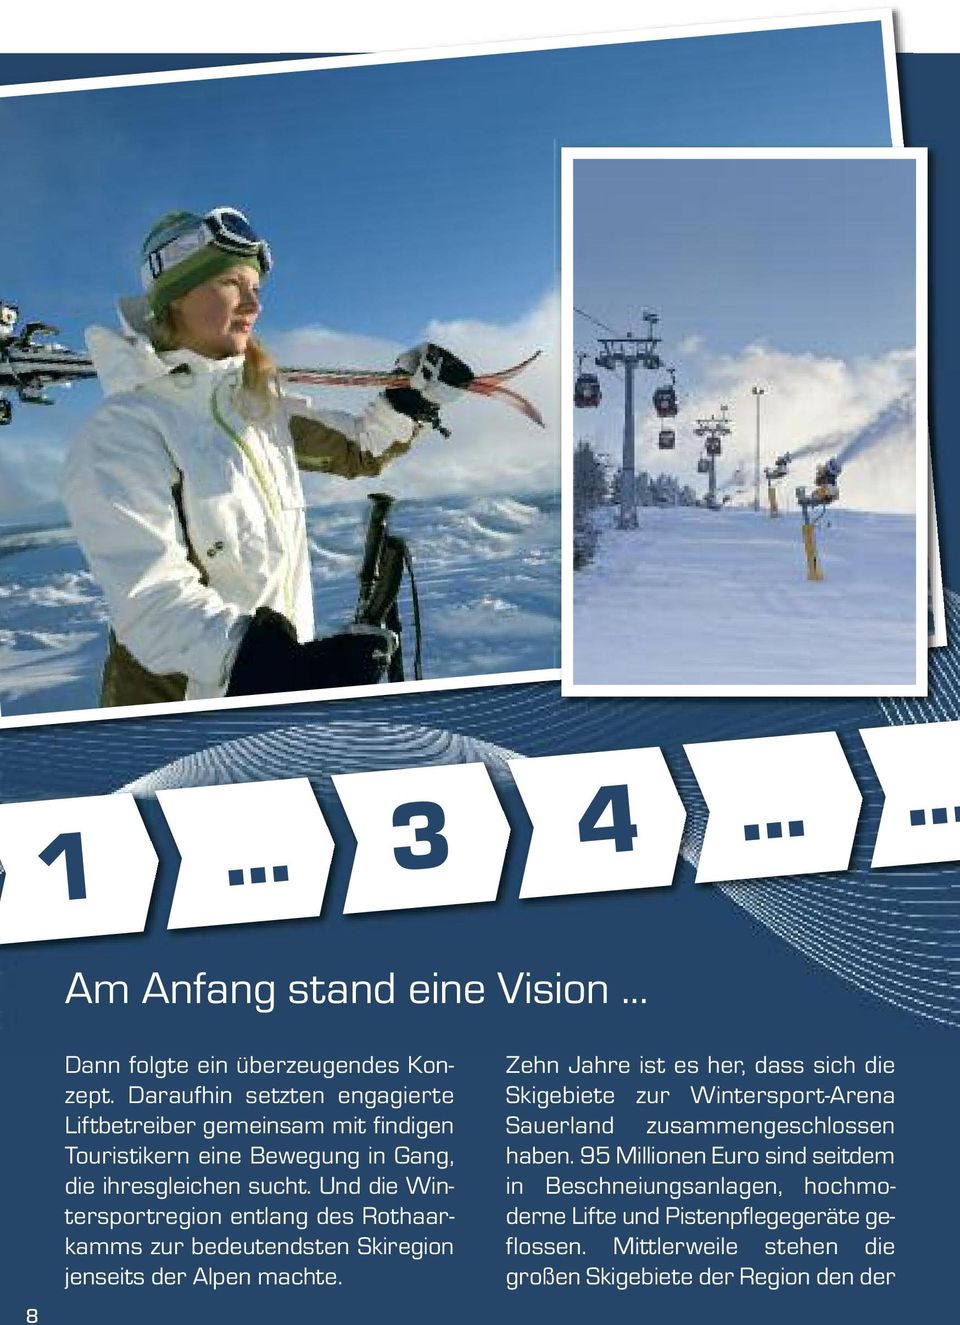 Und die Wintersportregion entlang des Rothaarkamms zur bedeutendsten Skiregion jenseits der Alpen machte.